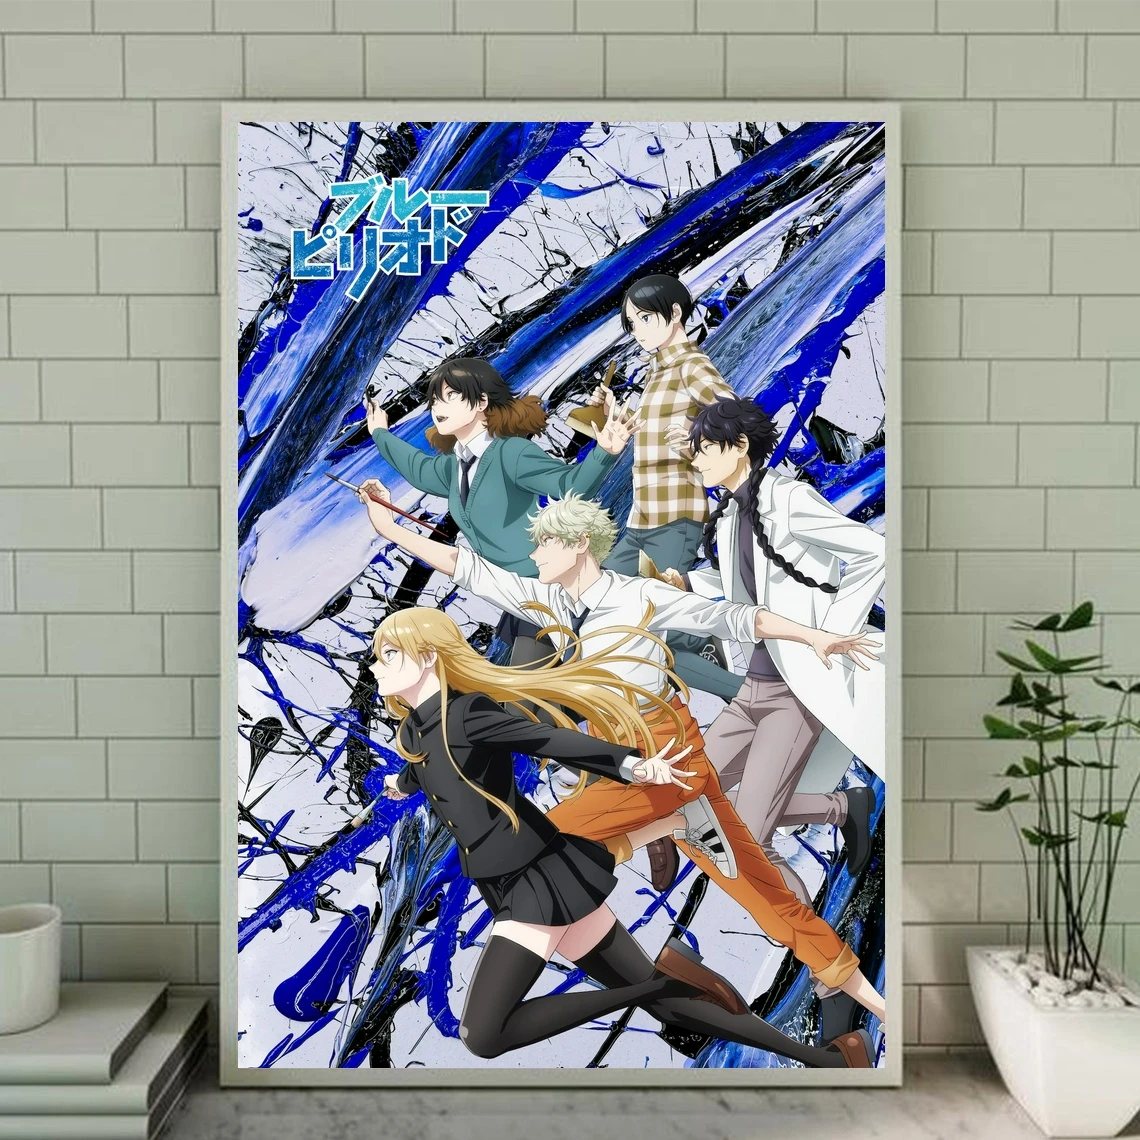 

Постеры аниме «синий период», печать на холсте без рамки, картина для украшения дома (без рамки)